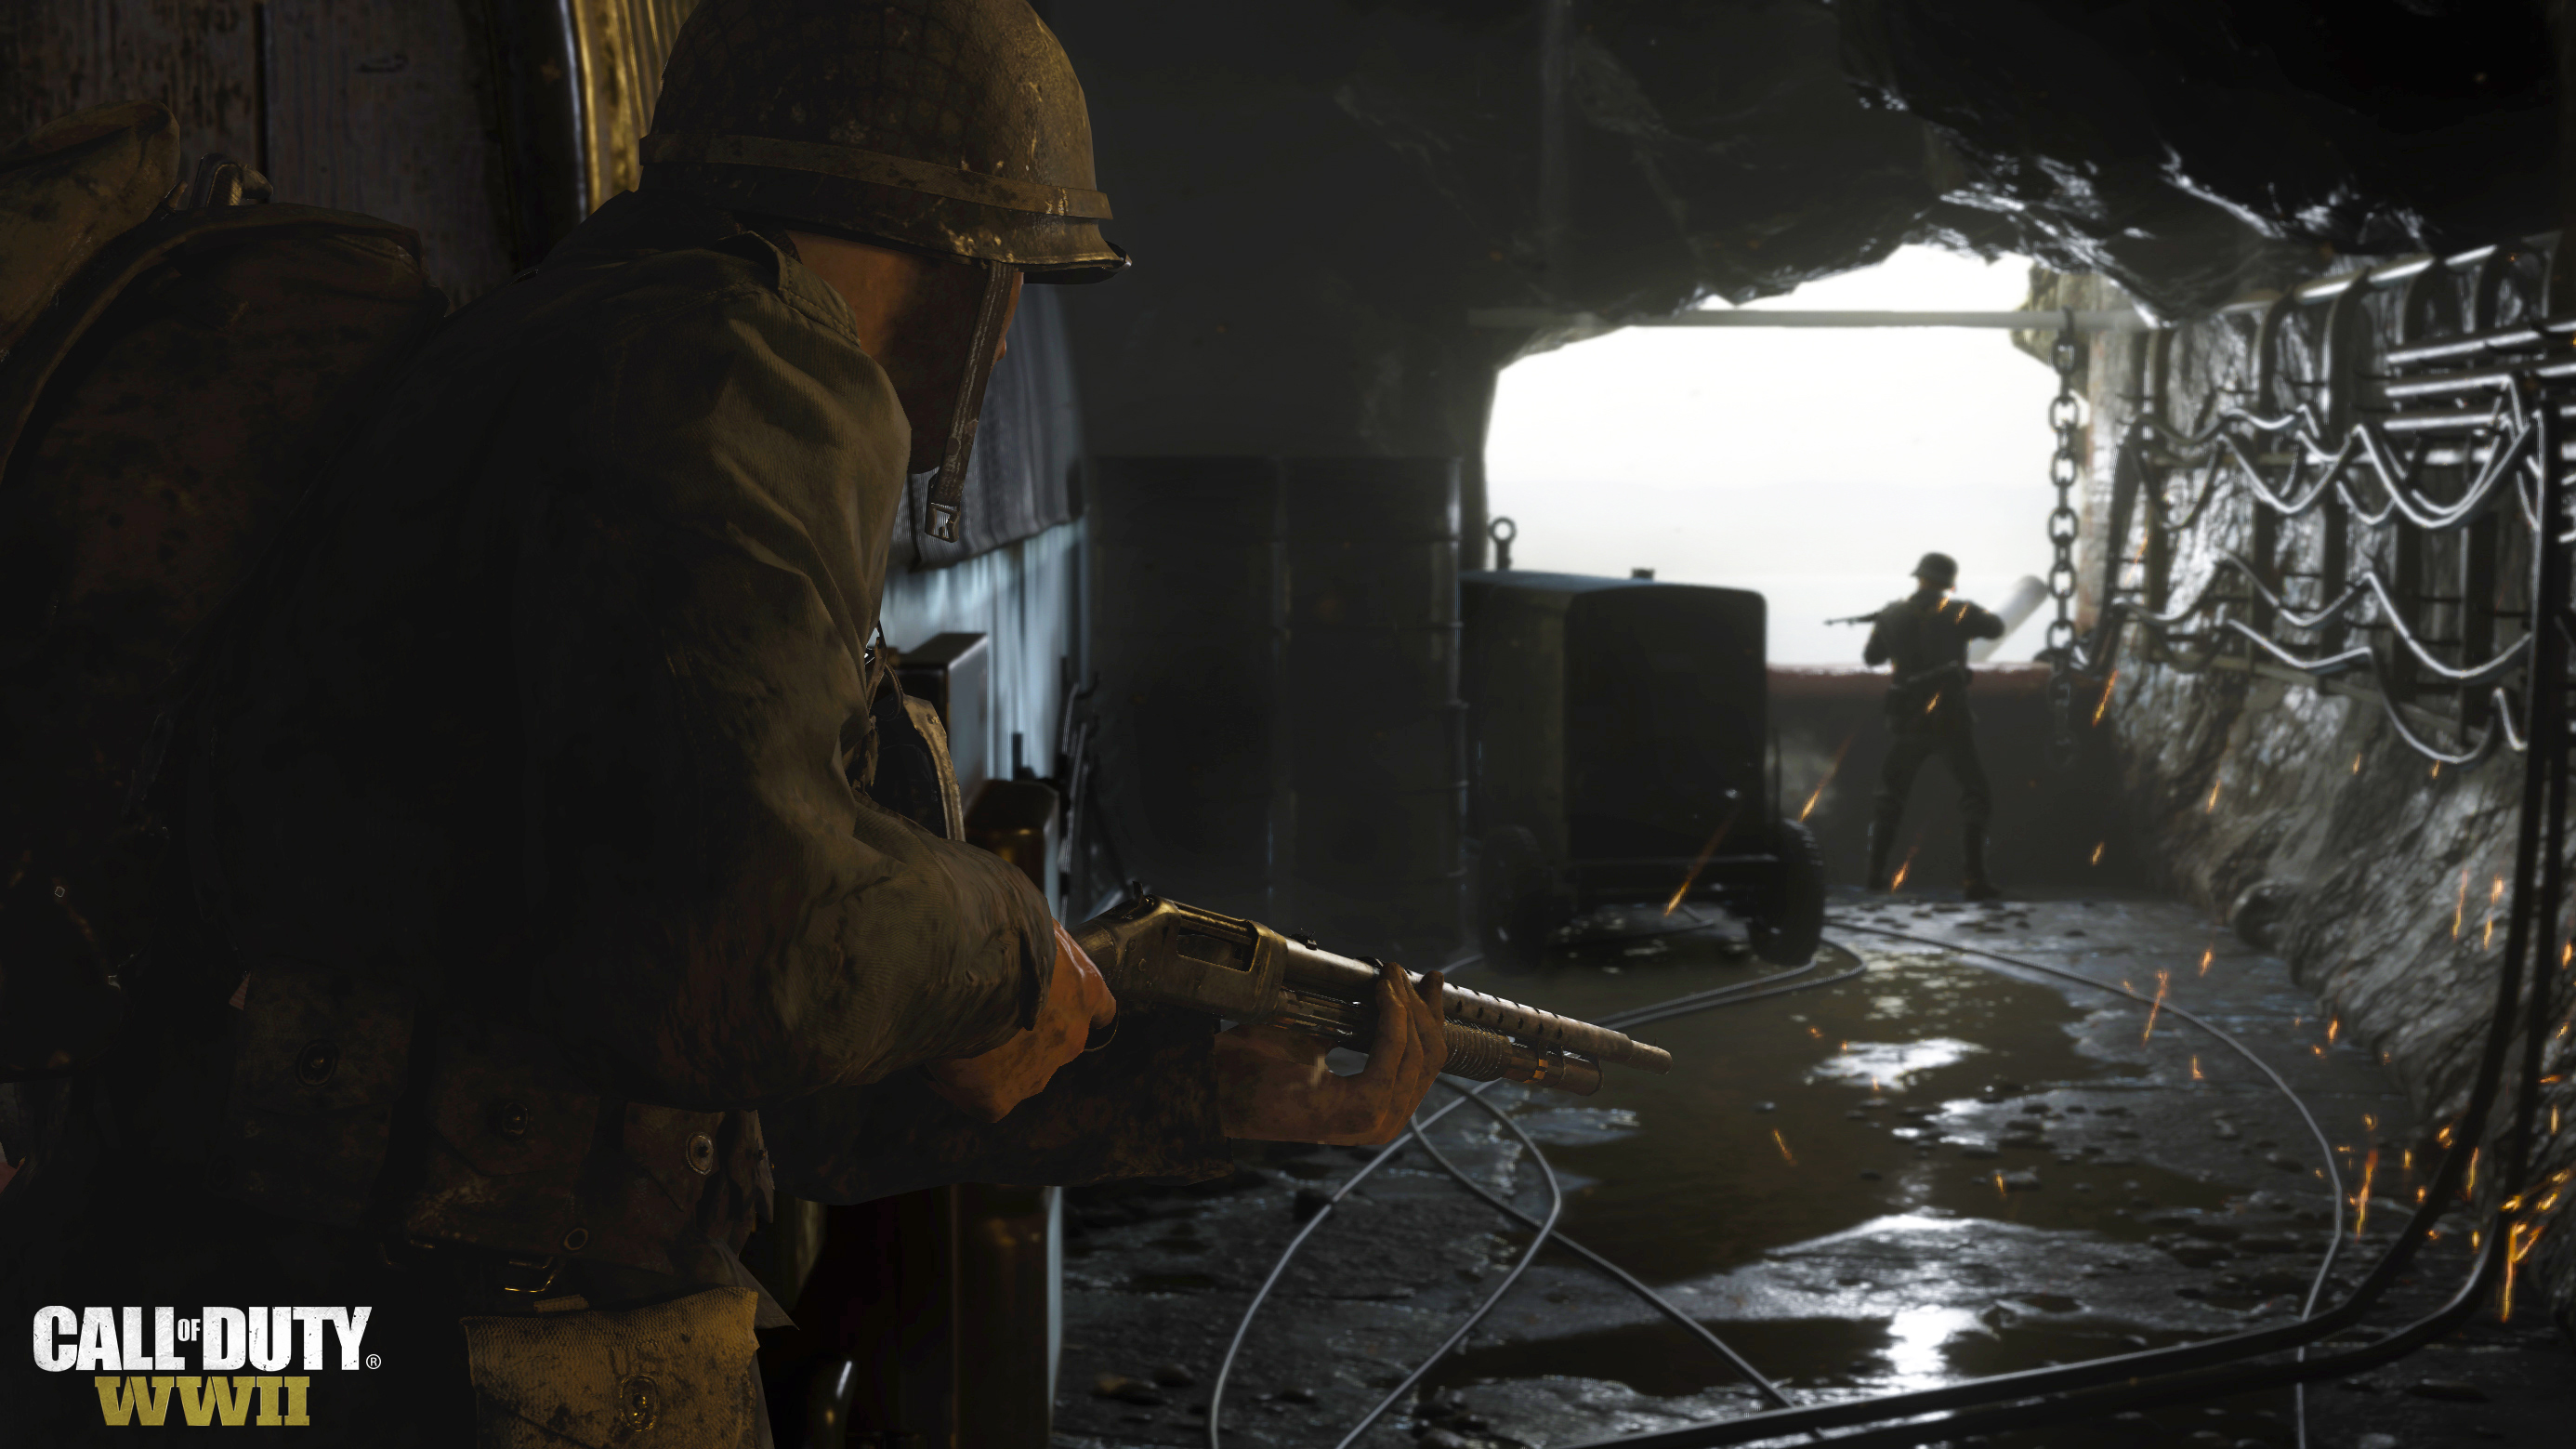 Immagine pubblicata in relazione al seguente contenuto: Activision pubblica nuovi trailer e screenshots dello shooter Call of Duty: WWII | Nome immagine: news26908_Call-of-Duty-WWII-Screenshot_1.jpg